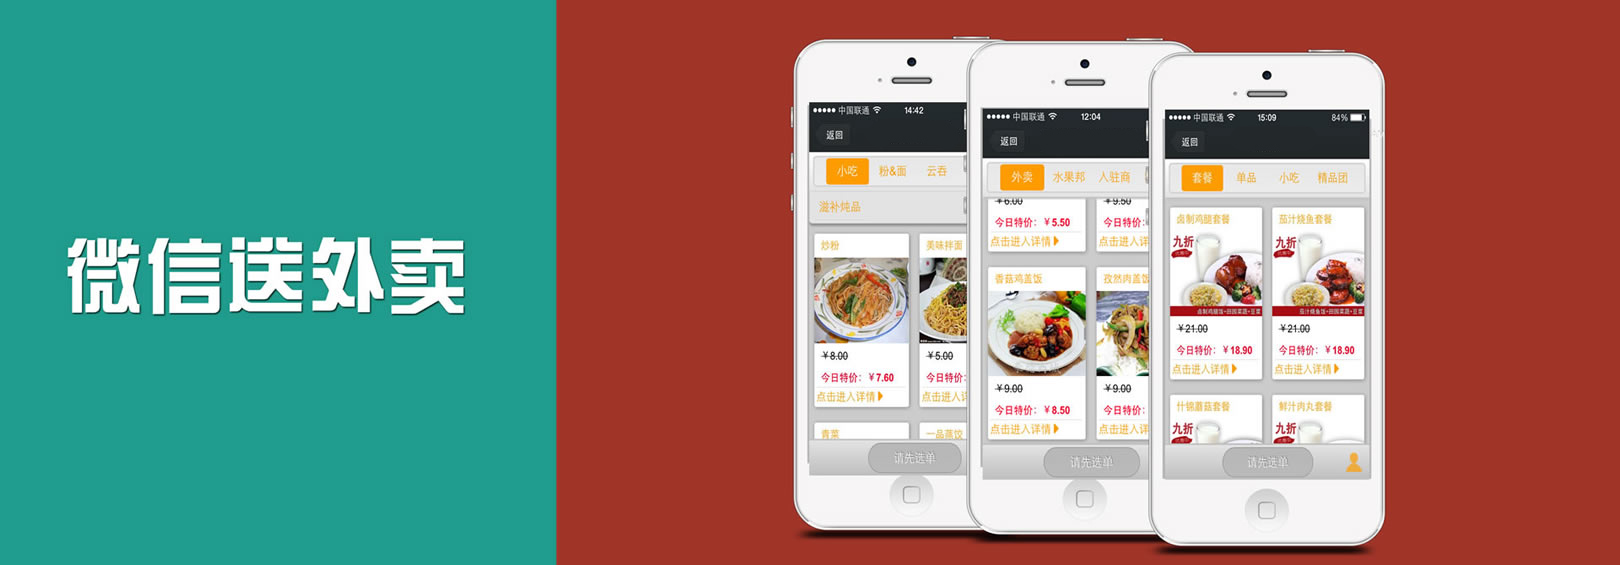 微信订餐系统_微信订餐系统哪个好_微信外卖订餐系统